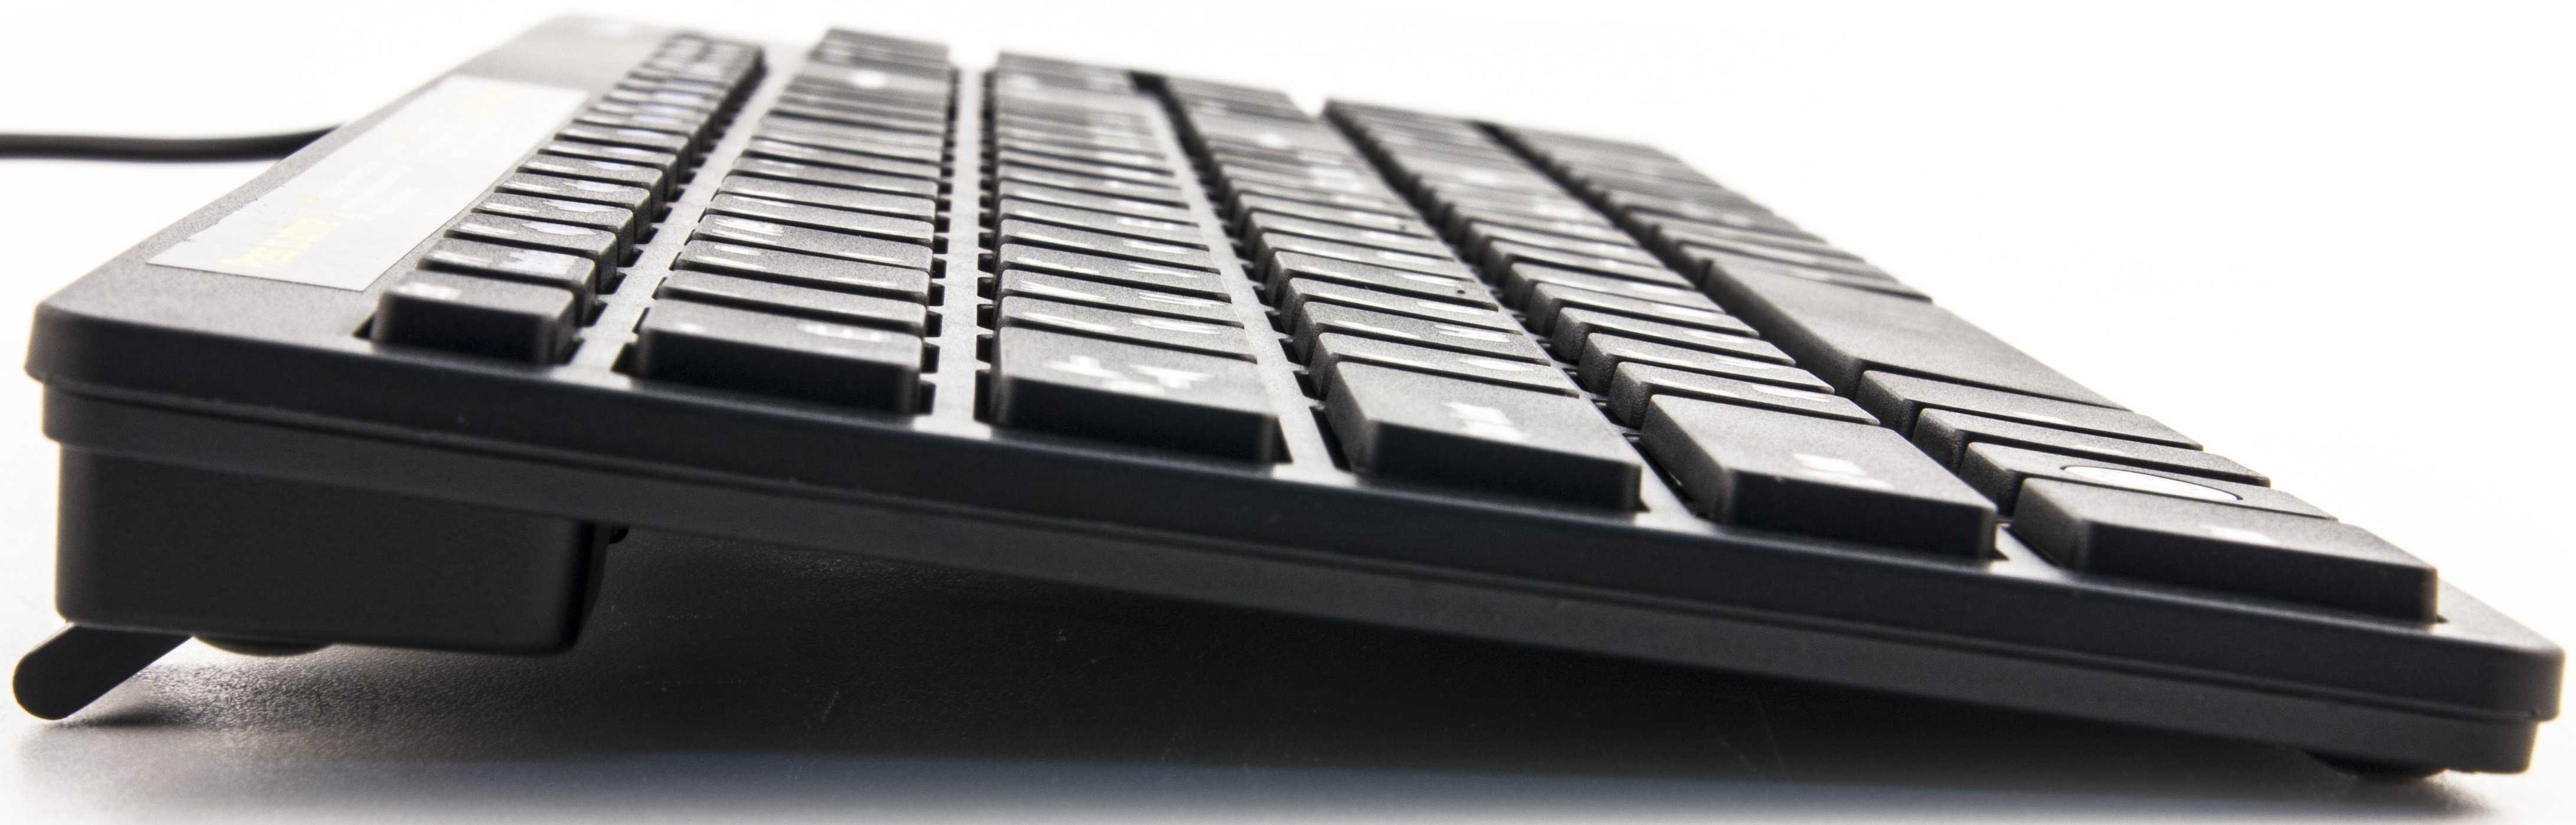 Defender dominanta xm-500 black usb (черный) - купить , скидки, цена, отзывы, обзор, характеристики - клавиатуры